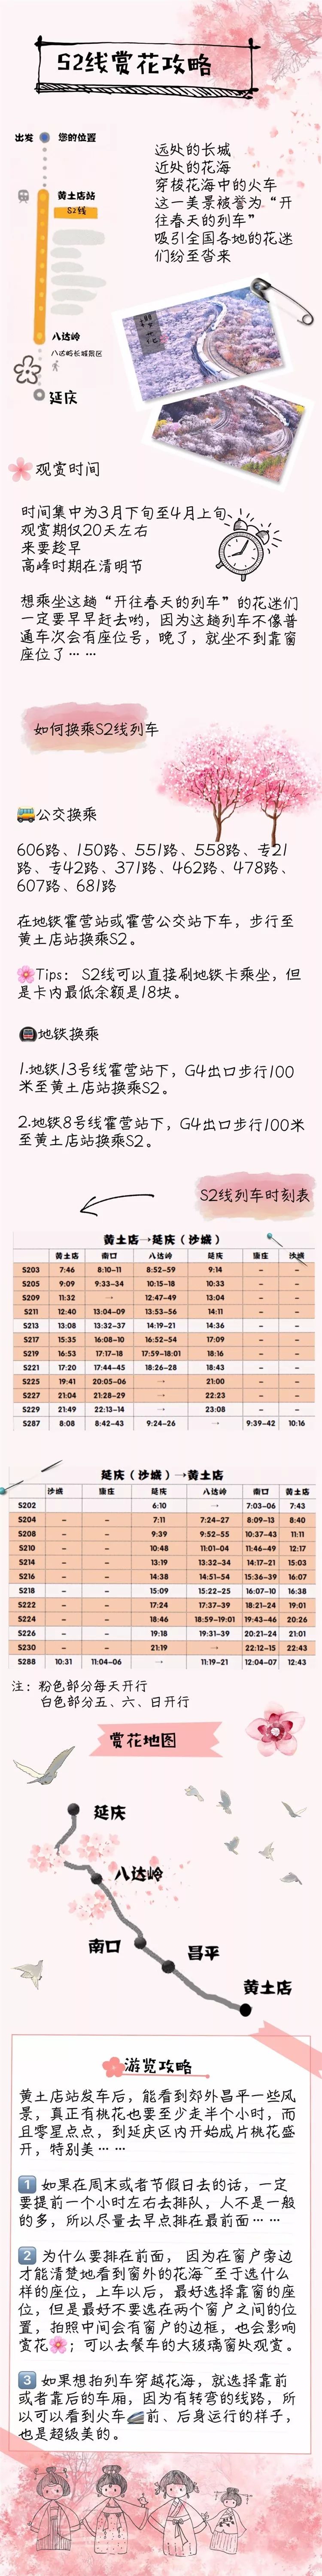 北京开往春天的列车S2线最新时刻表攻略